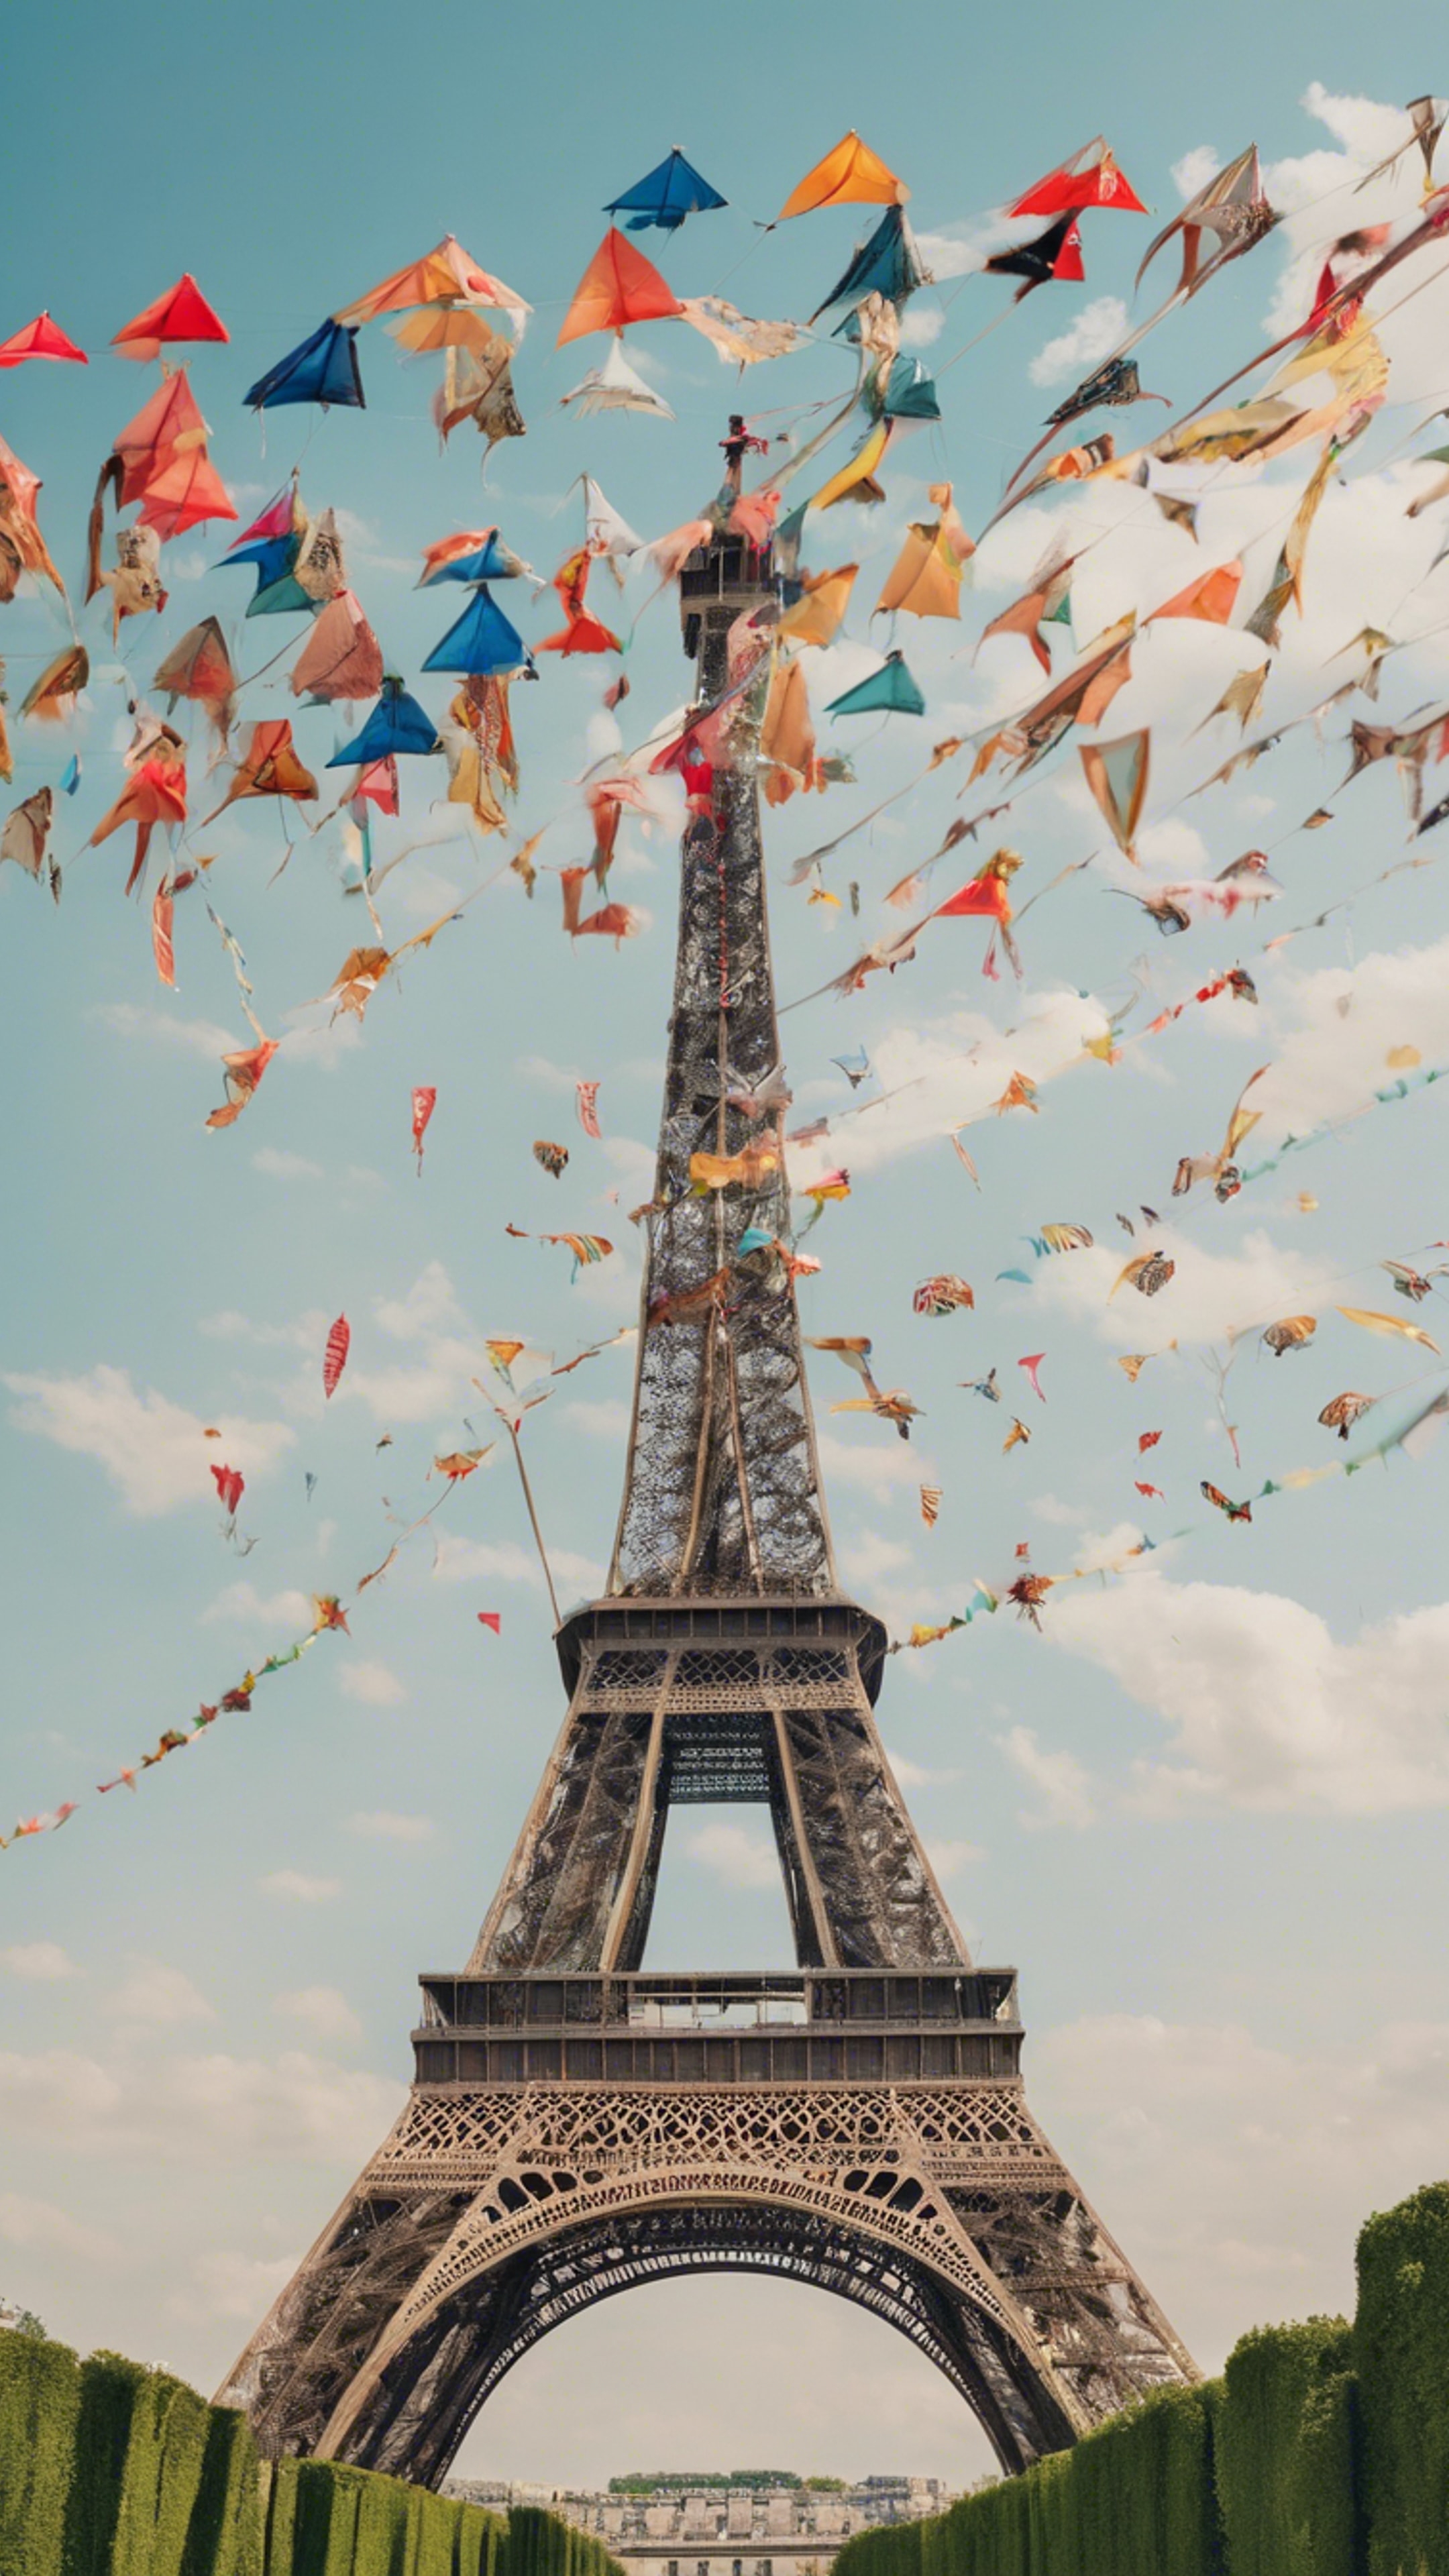 Numerous colorful kites flying around the Eiffel Tower on a breezy summer day. duvar kağıdı[13c5a5af918a46f7995e]